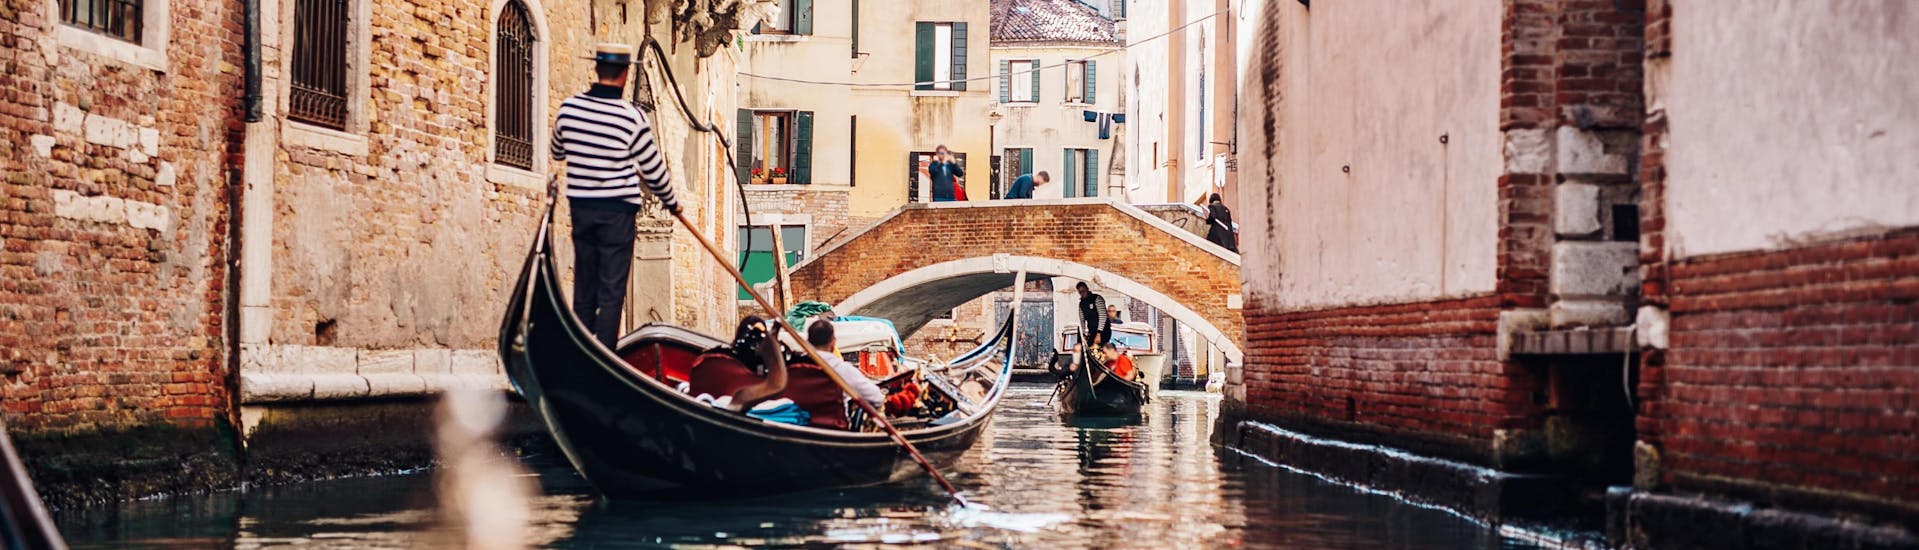 Ein Gondoliere paddelt bei einer Gondelfahrt in Venedig durch einen engen Kanal.